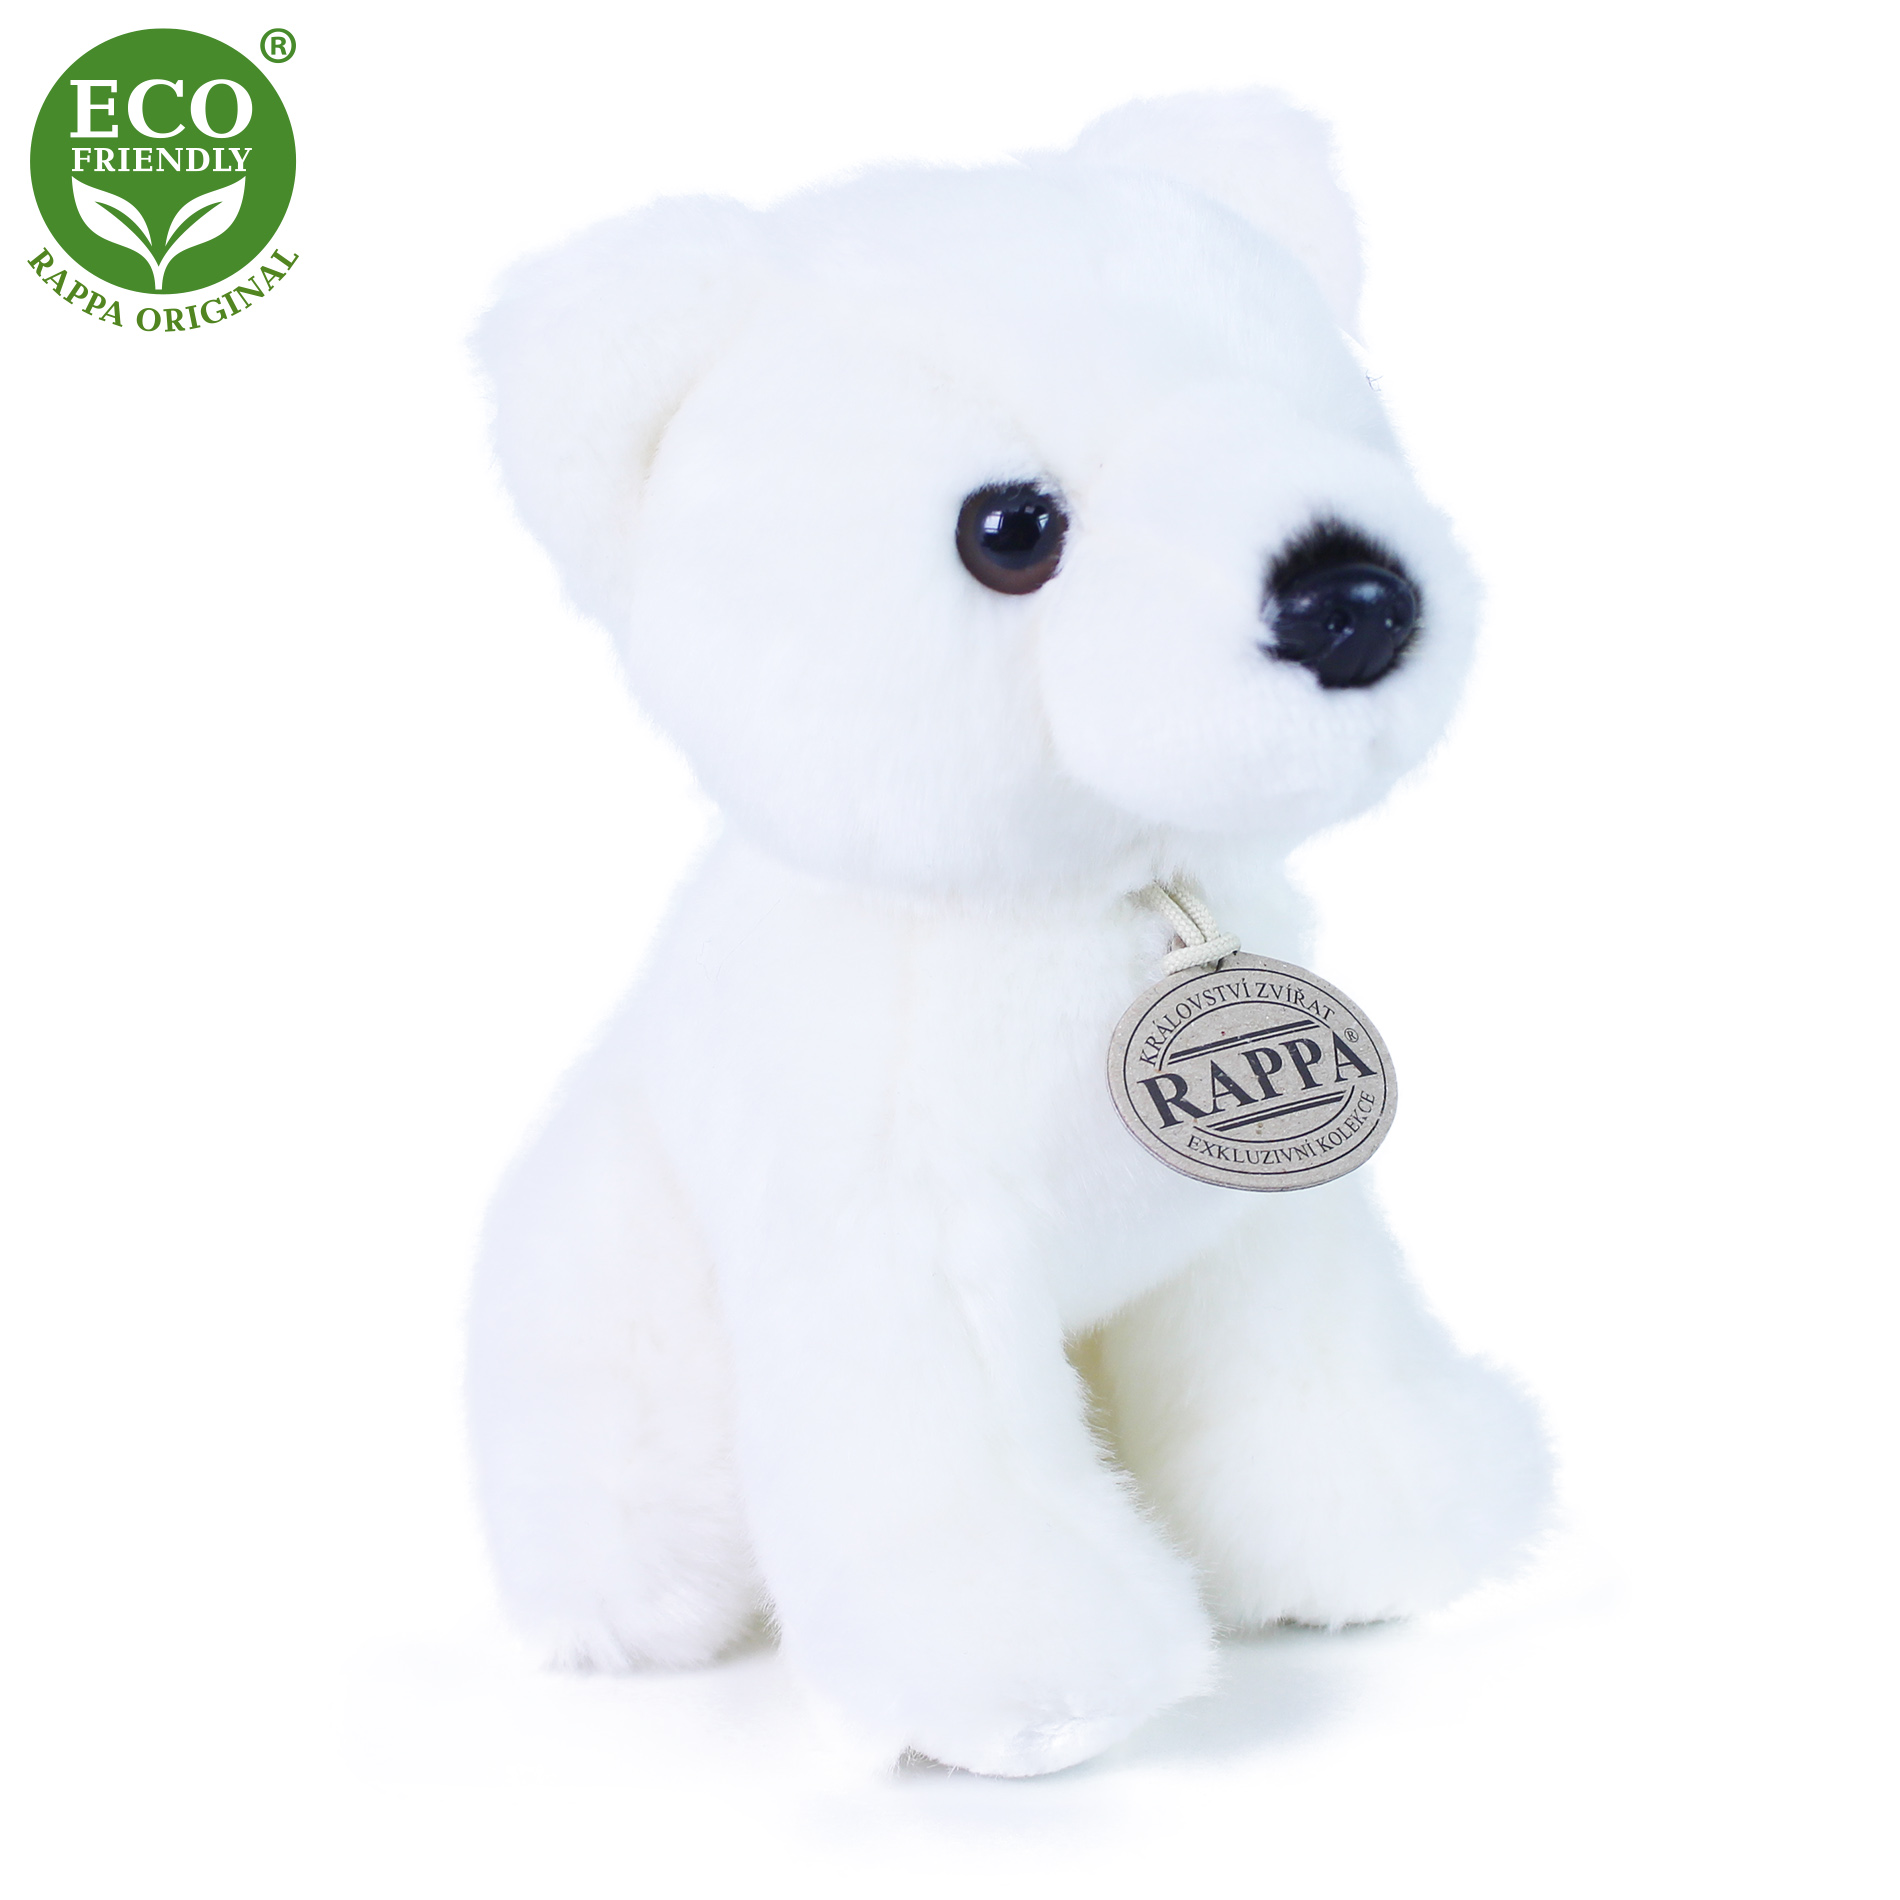 Rappa Eco-Friendly - Plyšový medvěd bílý 18 cm